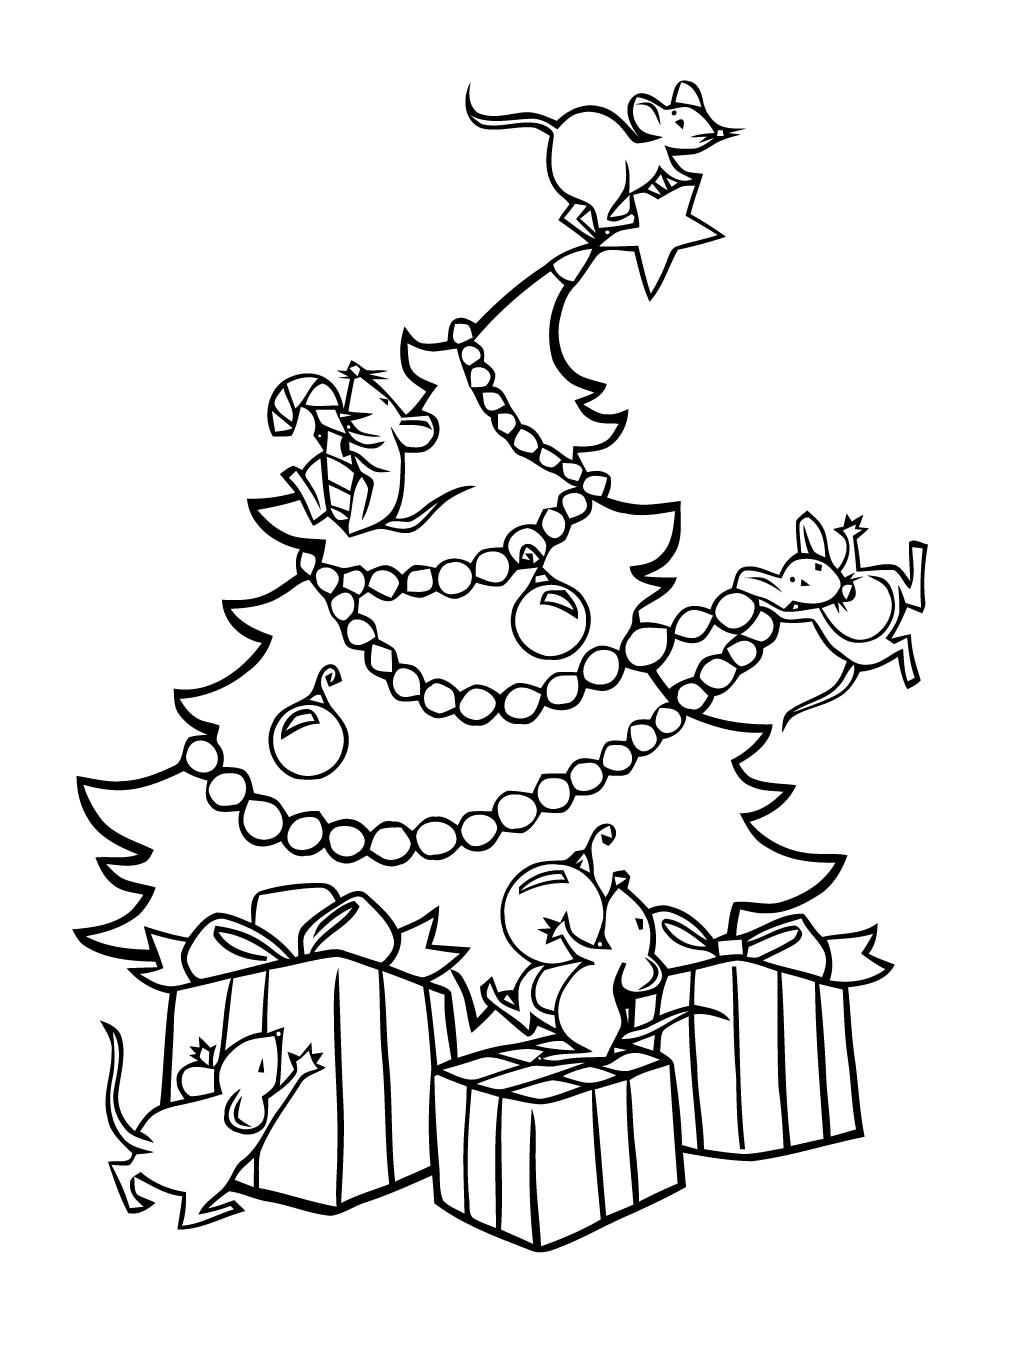 Divertida página para colorear del árbol de Navidad